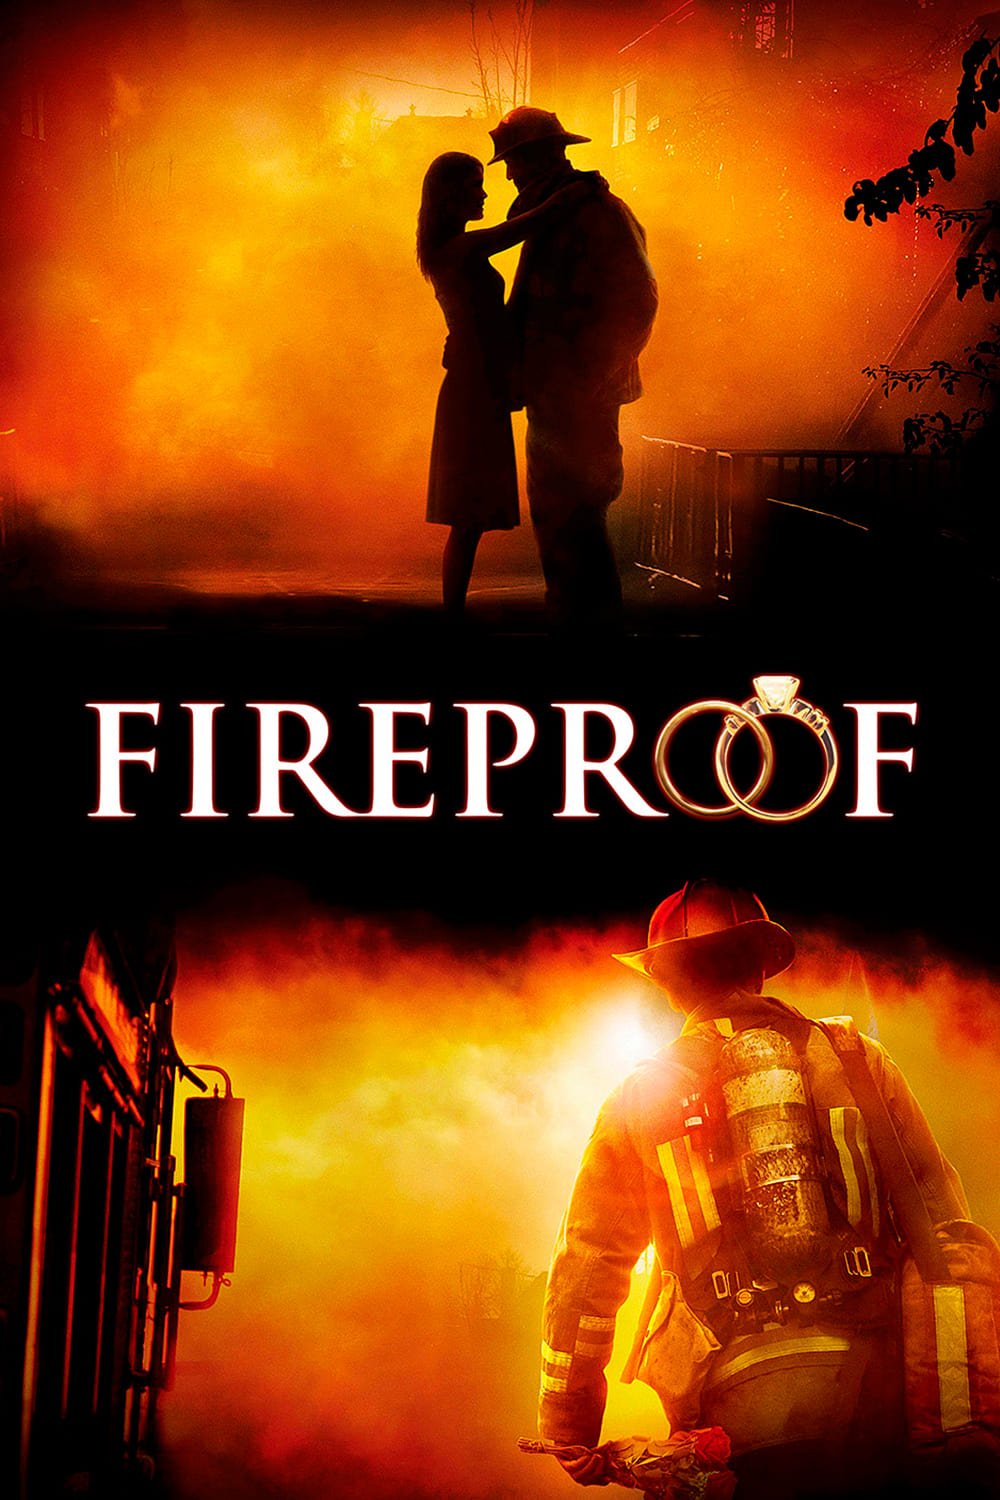 Fireproof - Gib deinen Partner nicht auf (2008)